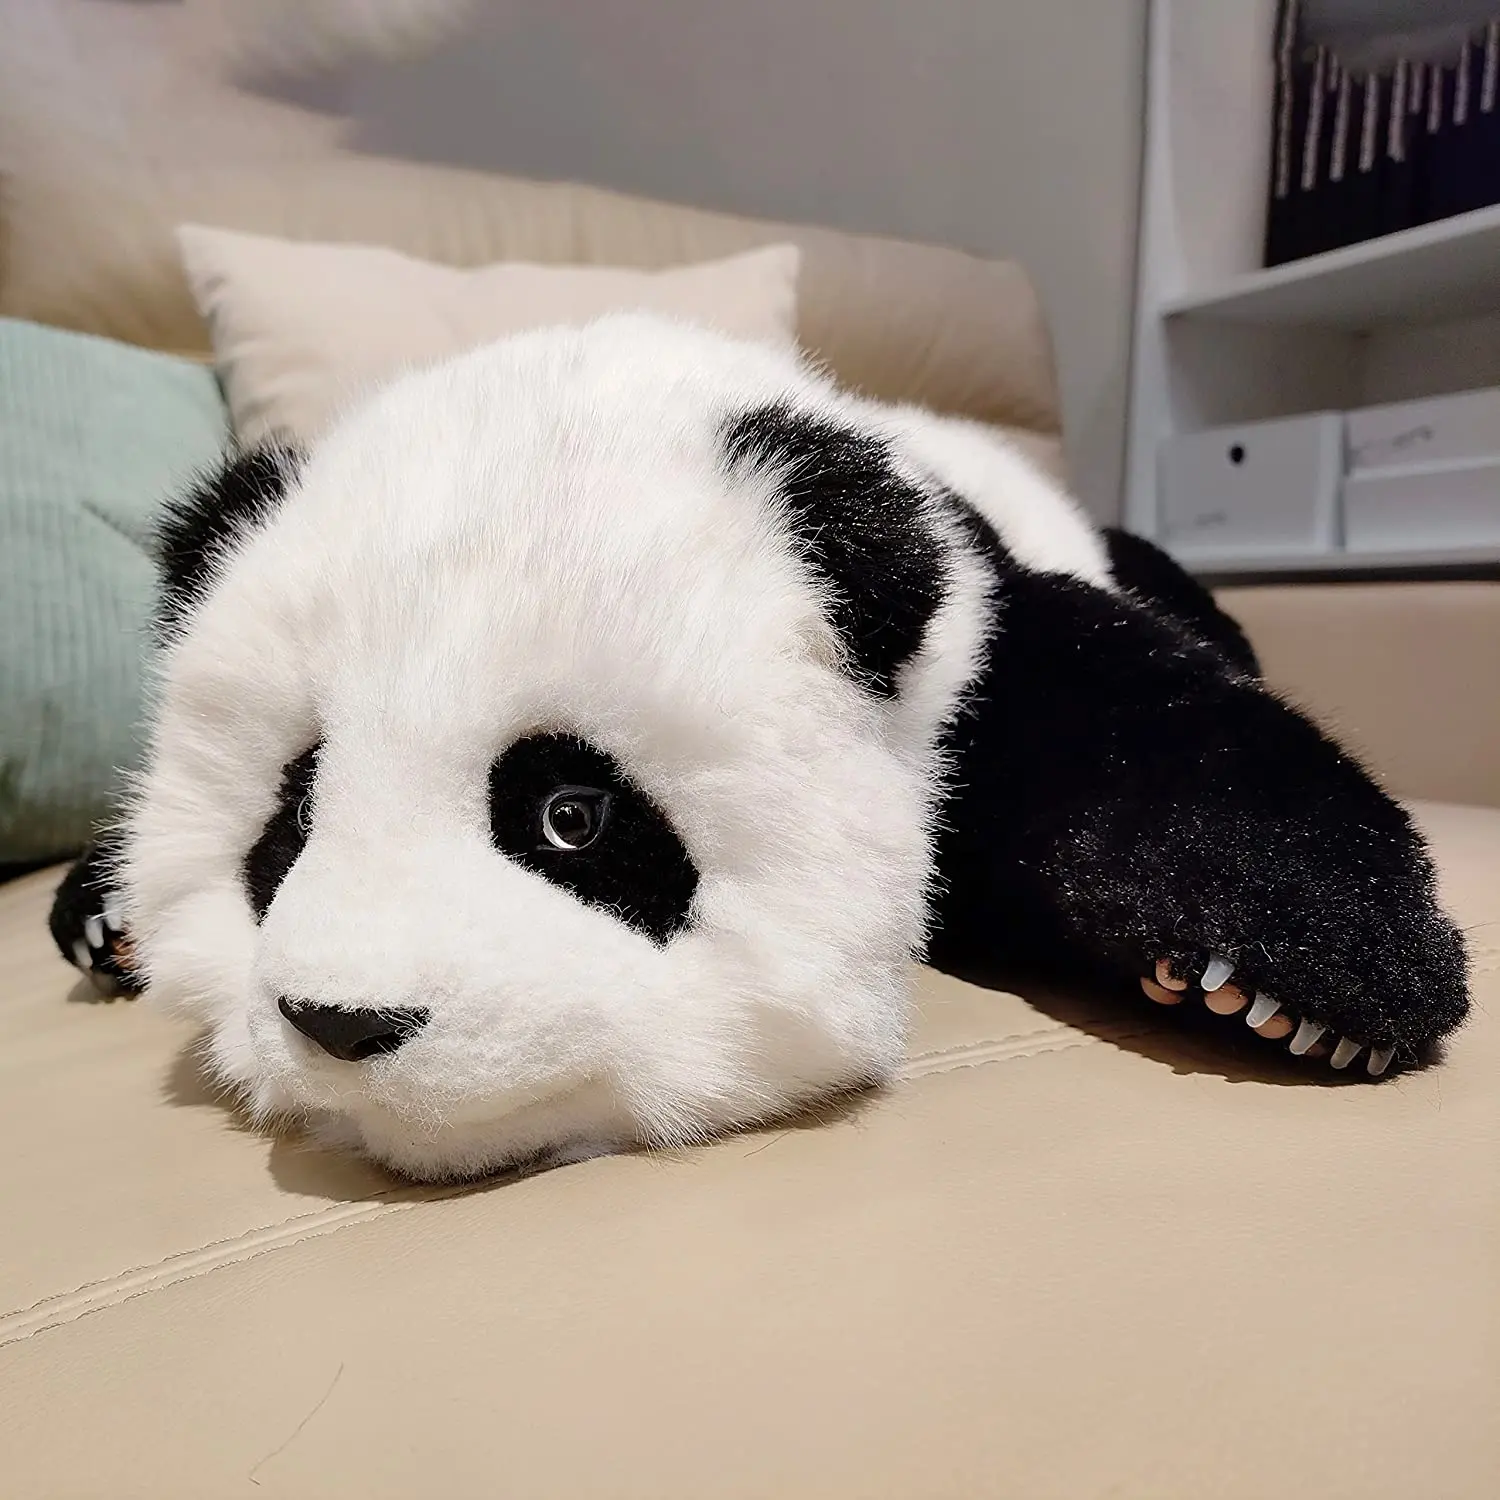 4LB чучела животные реалистичные изготовленные вручную набитые с гигантской пандой плюшевые похожая на настоящую панды плюшевые для беспокойства Утяжеленный плюшевая игрушка